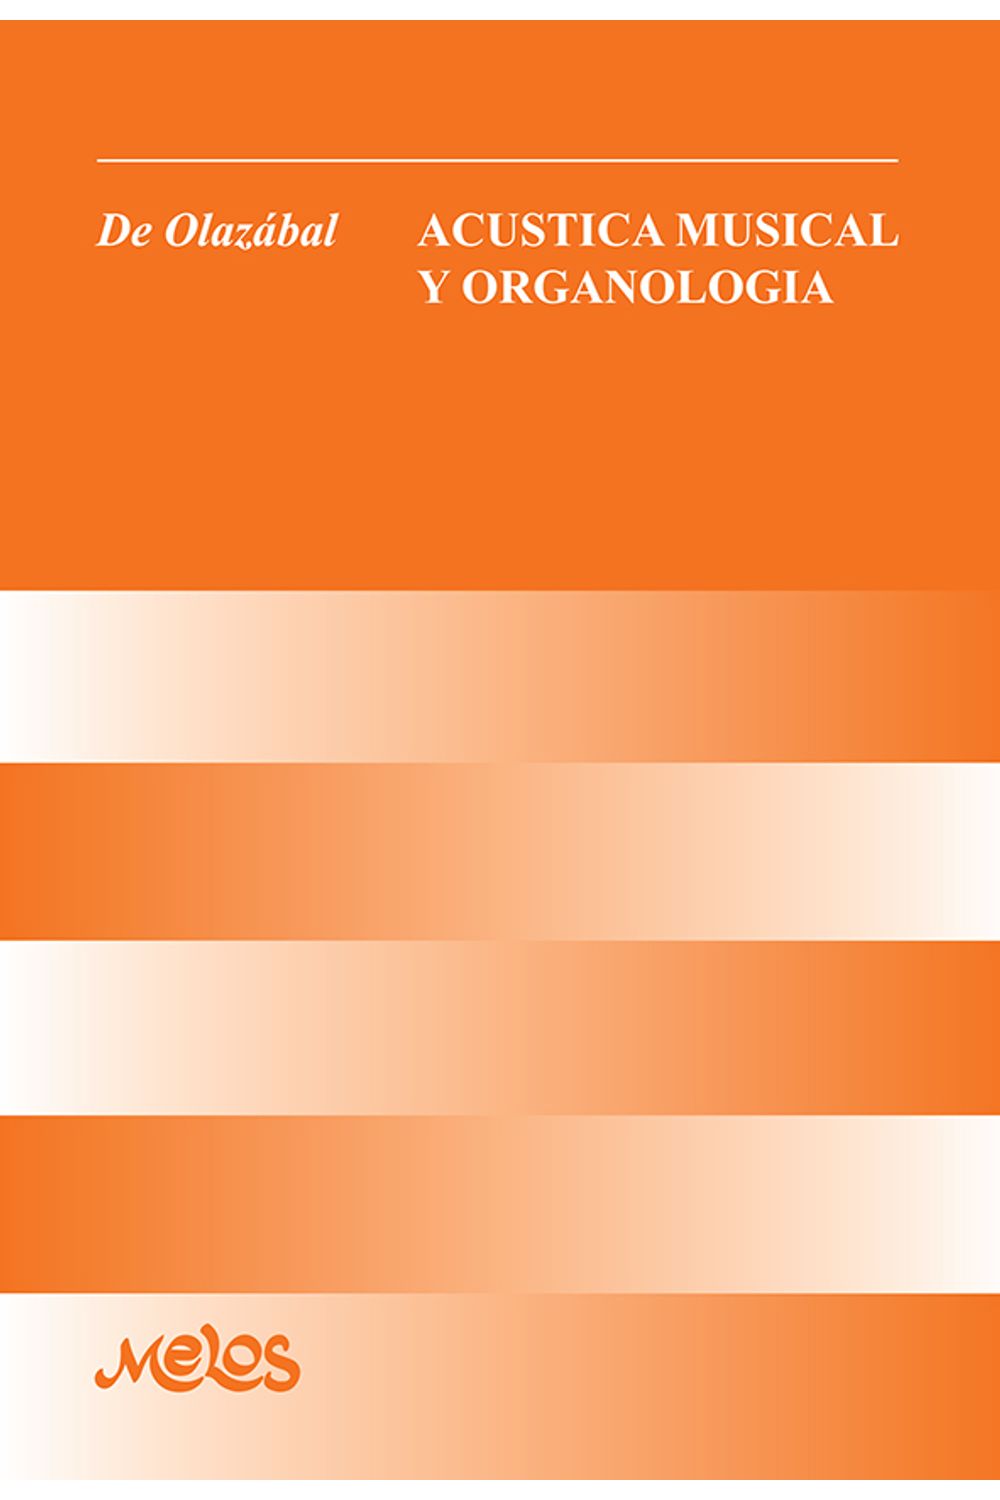 bm-ba10997-acustica-musical-y-organologia-melos-ediciones-musicales-9789876110211